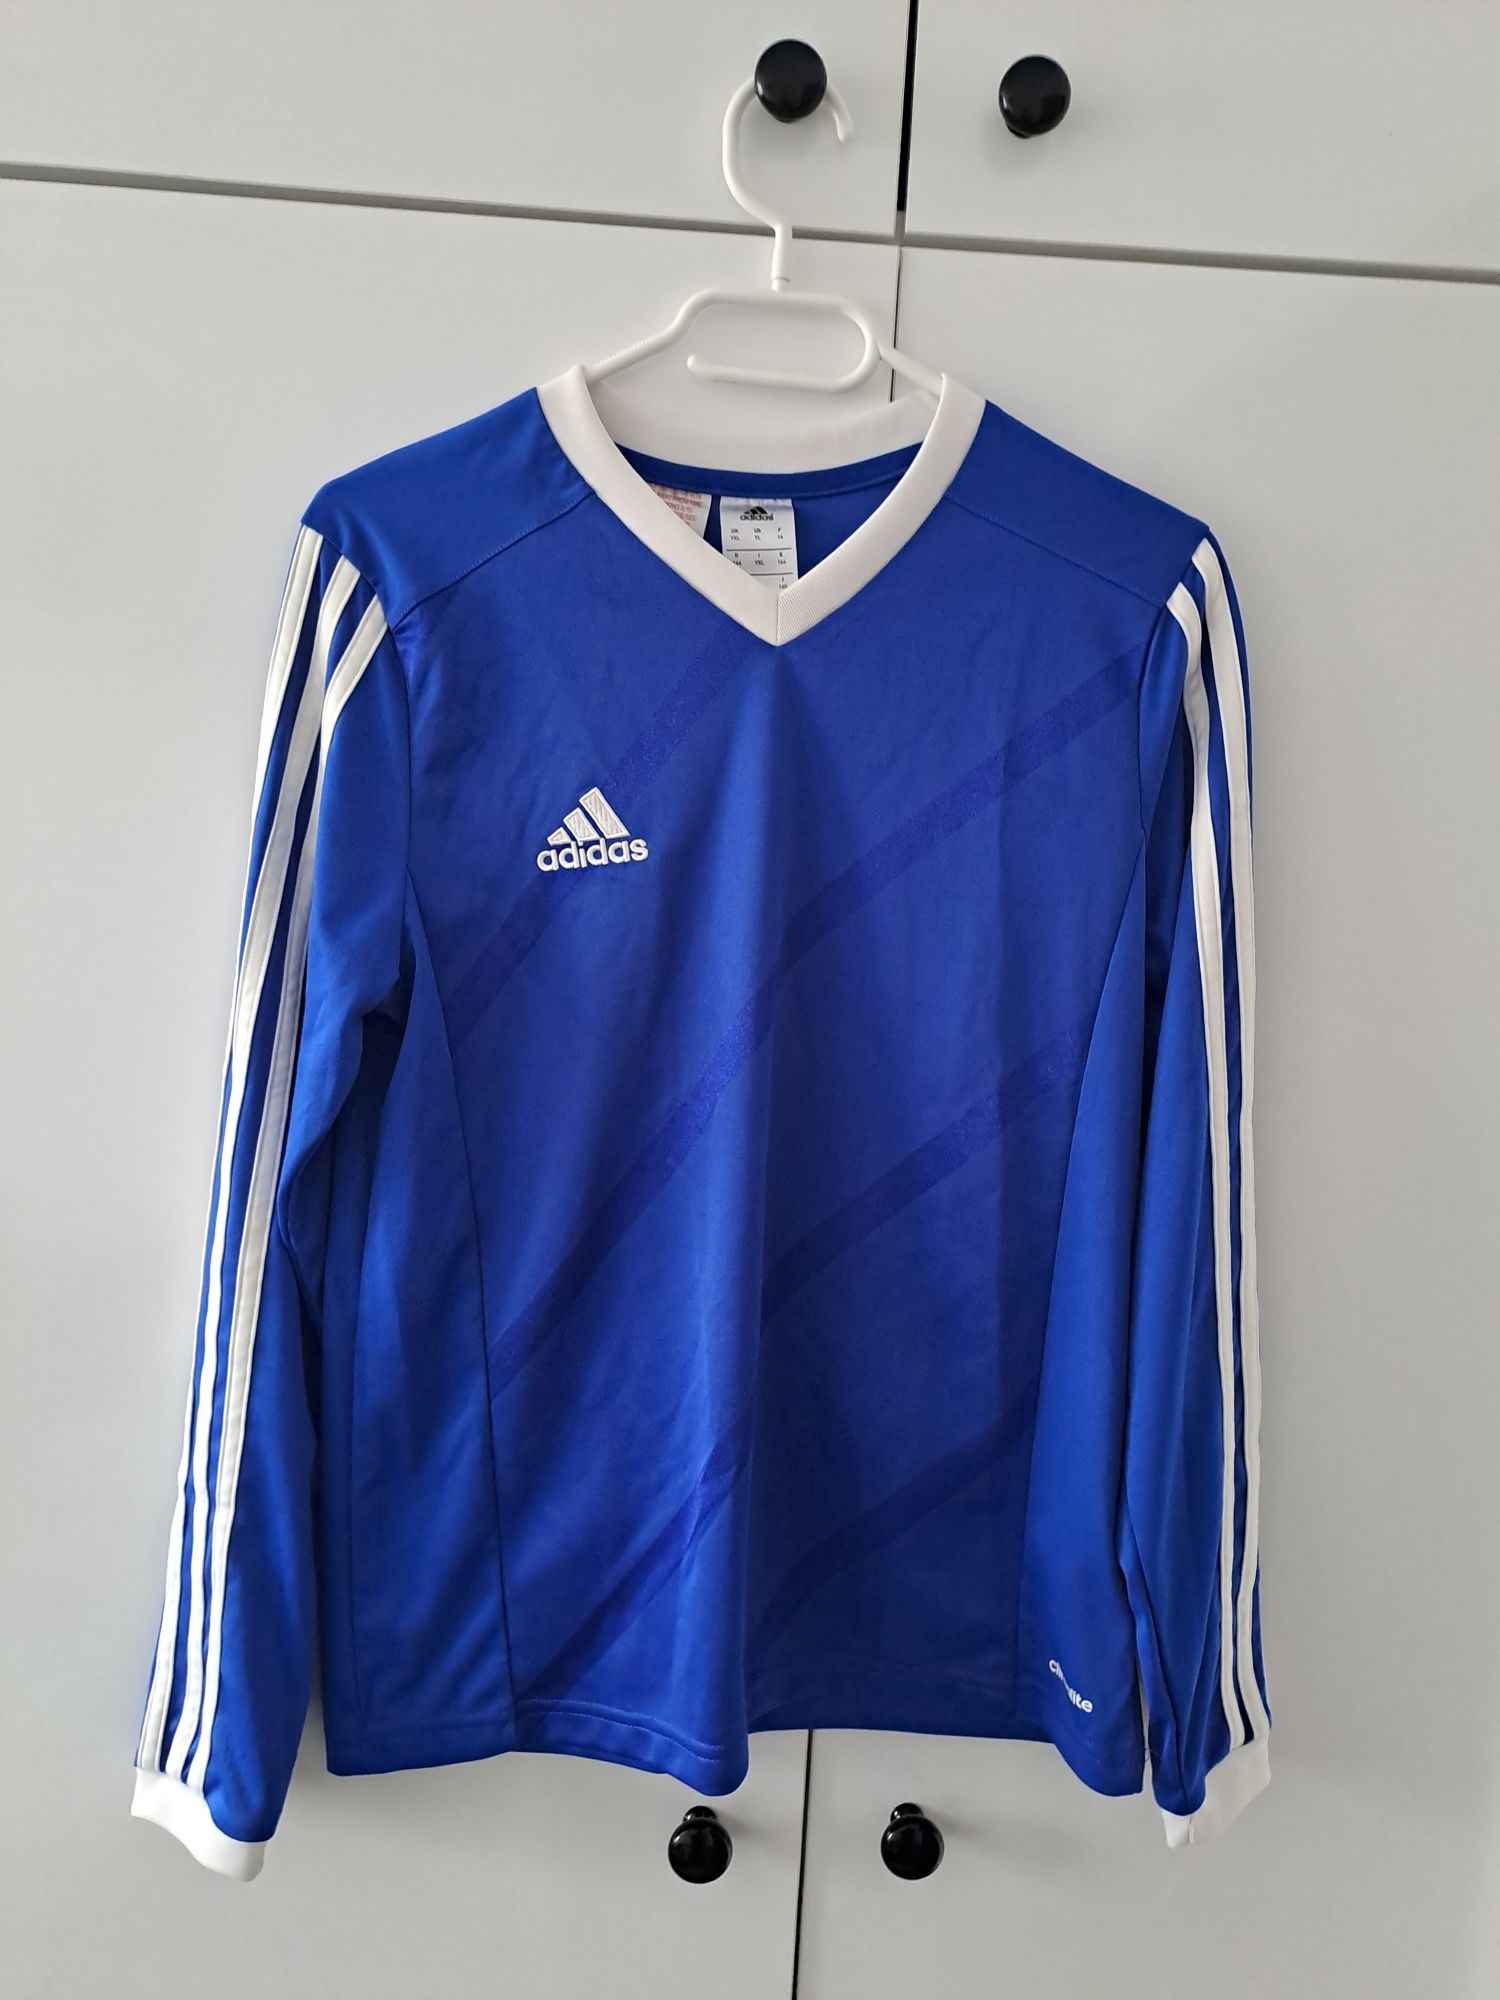 Bluza sportowa marki Adidas, roz. 164